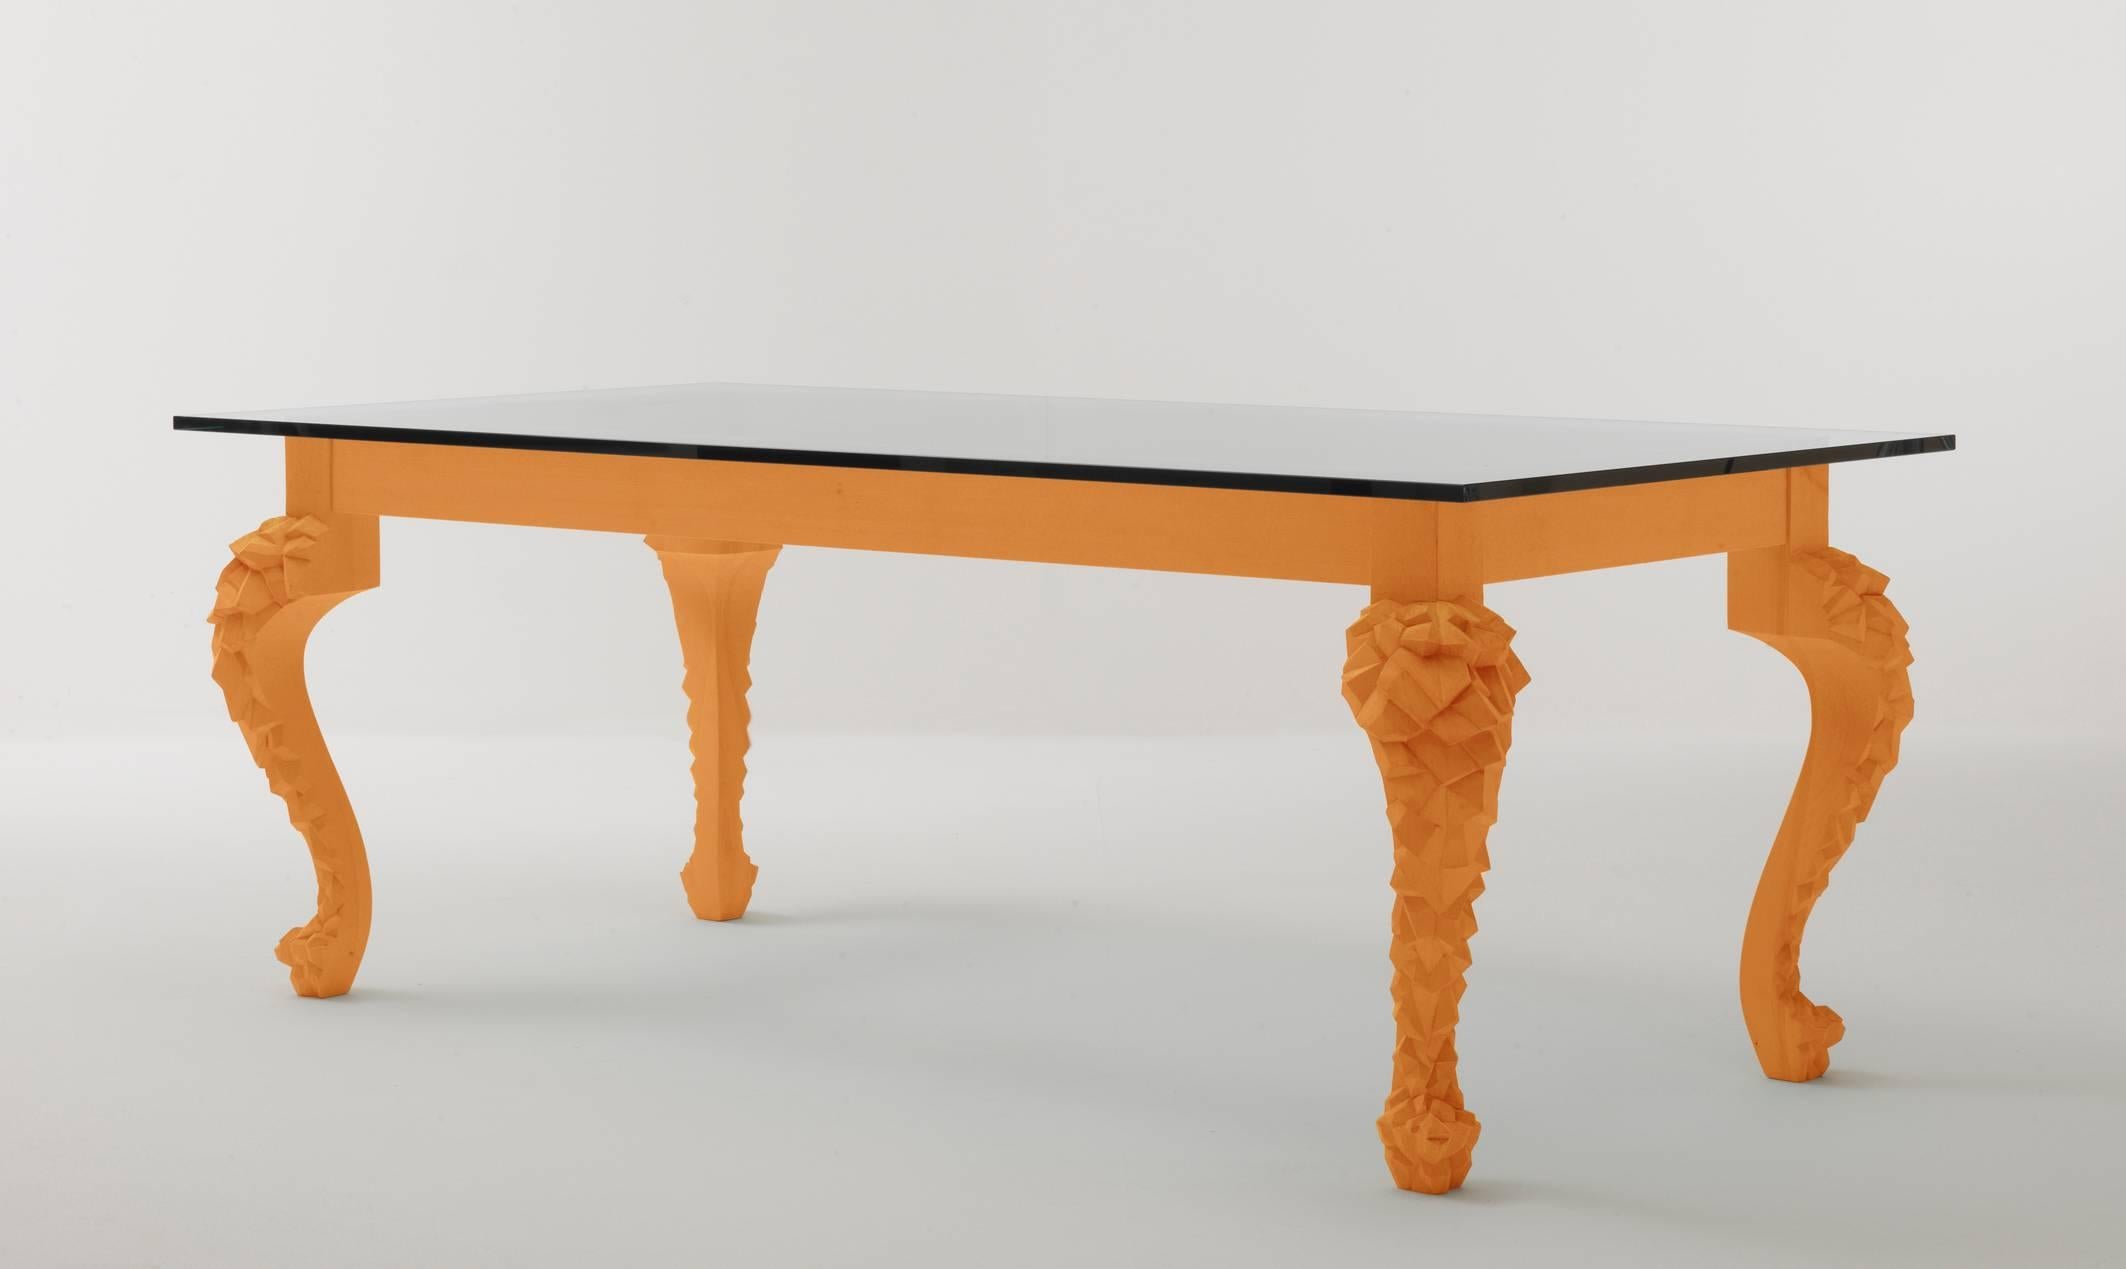 Eine doppelte Ausführung des Tisches mit traditionellem Cabriole-Bein. Der Crusty-Tisch hat ein ganz besonderes Bein, das digital bearbeitet wurde; Coates hat einen Scan eines Originalbeins aus dem Archiv von Fratelli Boffi angepasst und durch